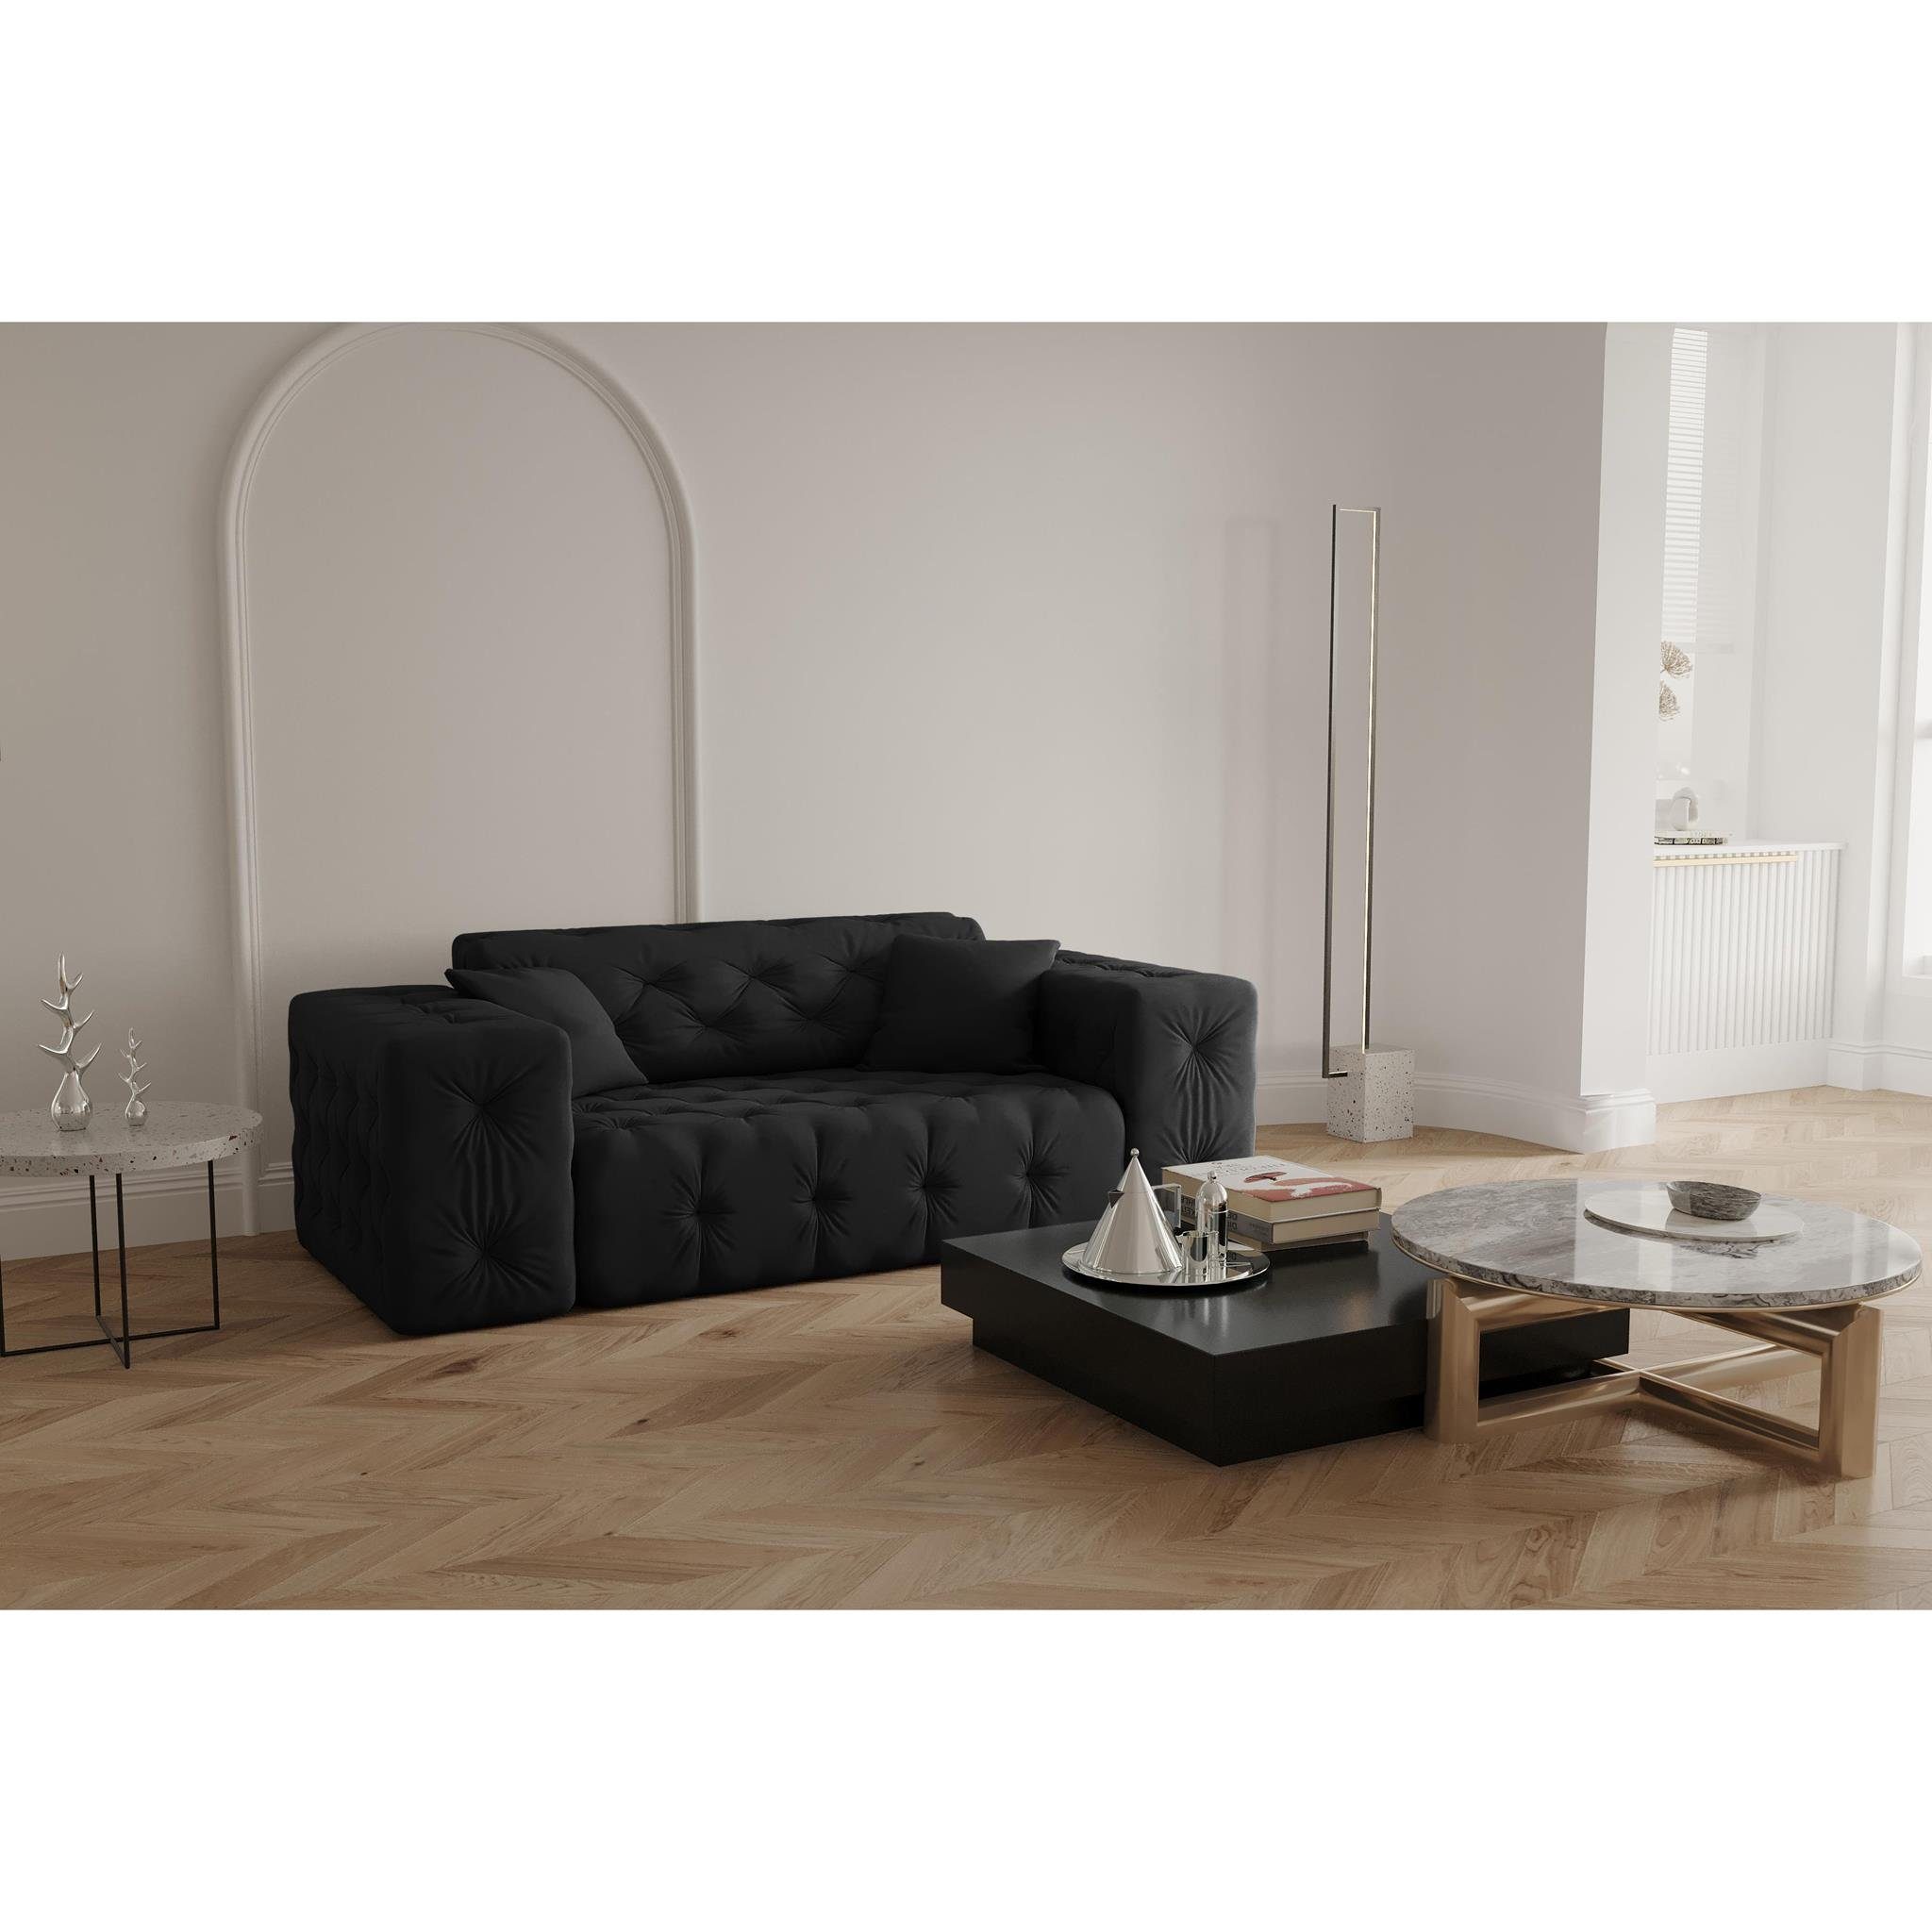 Beautysofa 2-Sitzer Moreno, 2-Sitzer Sofa mit Wellenfedern auf Velvetstoff, im Chesterfield-Design, mit hochwertiger Knopfheftung Opera black